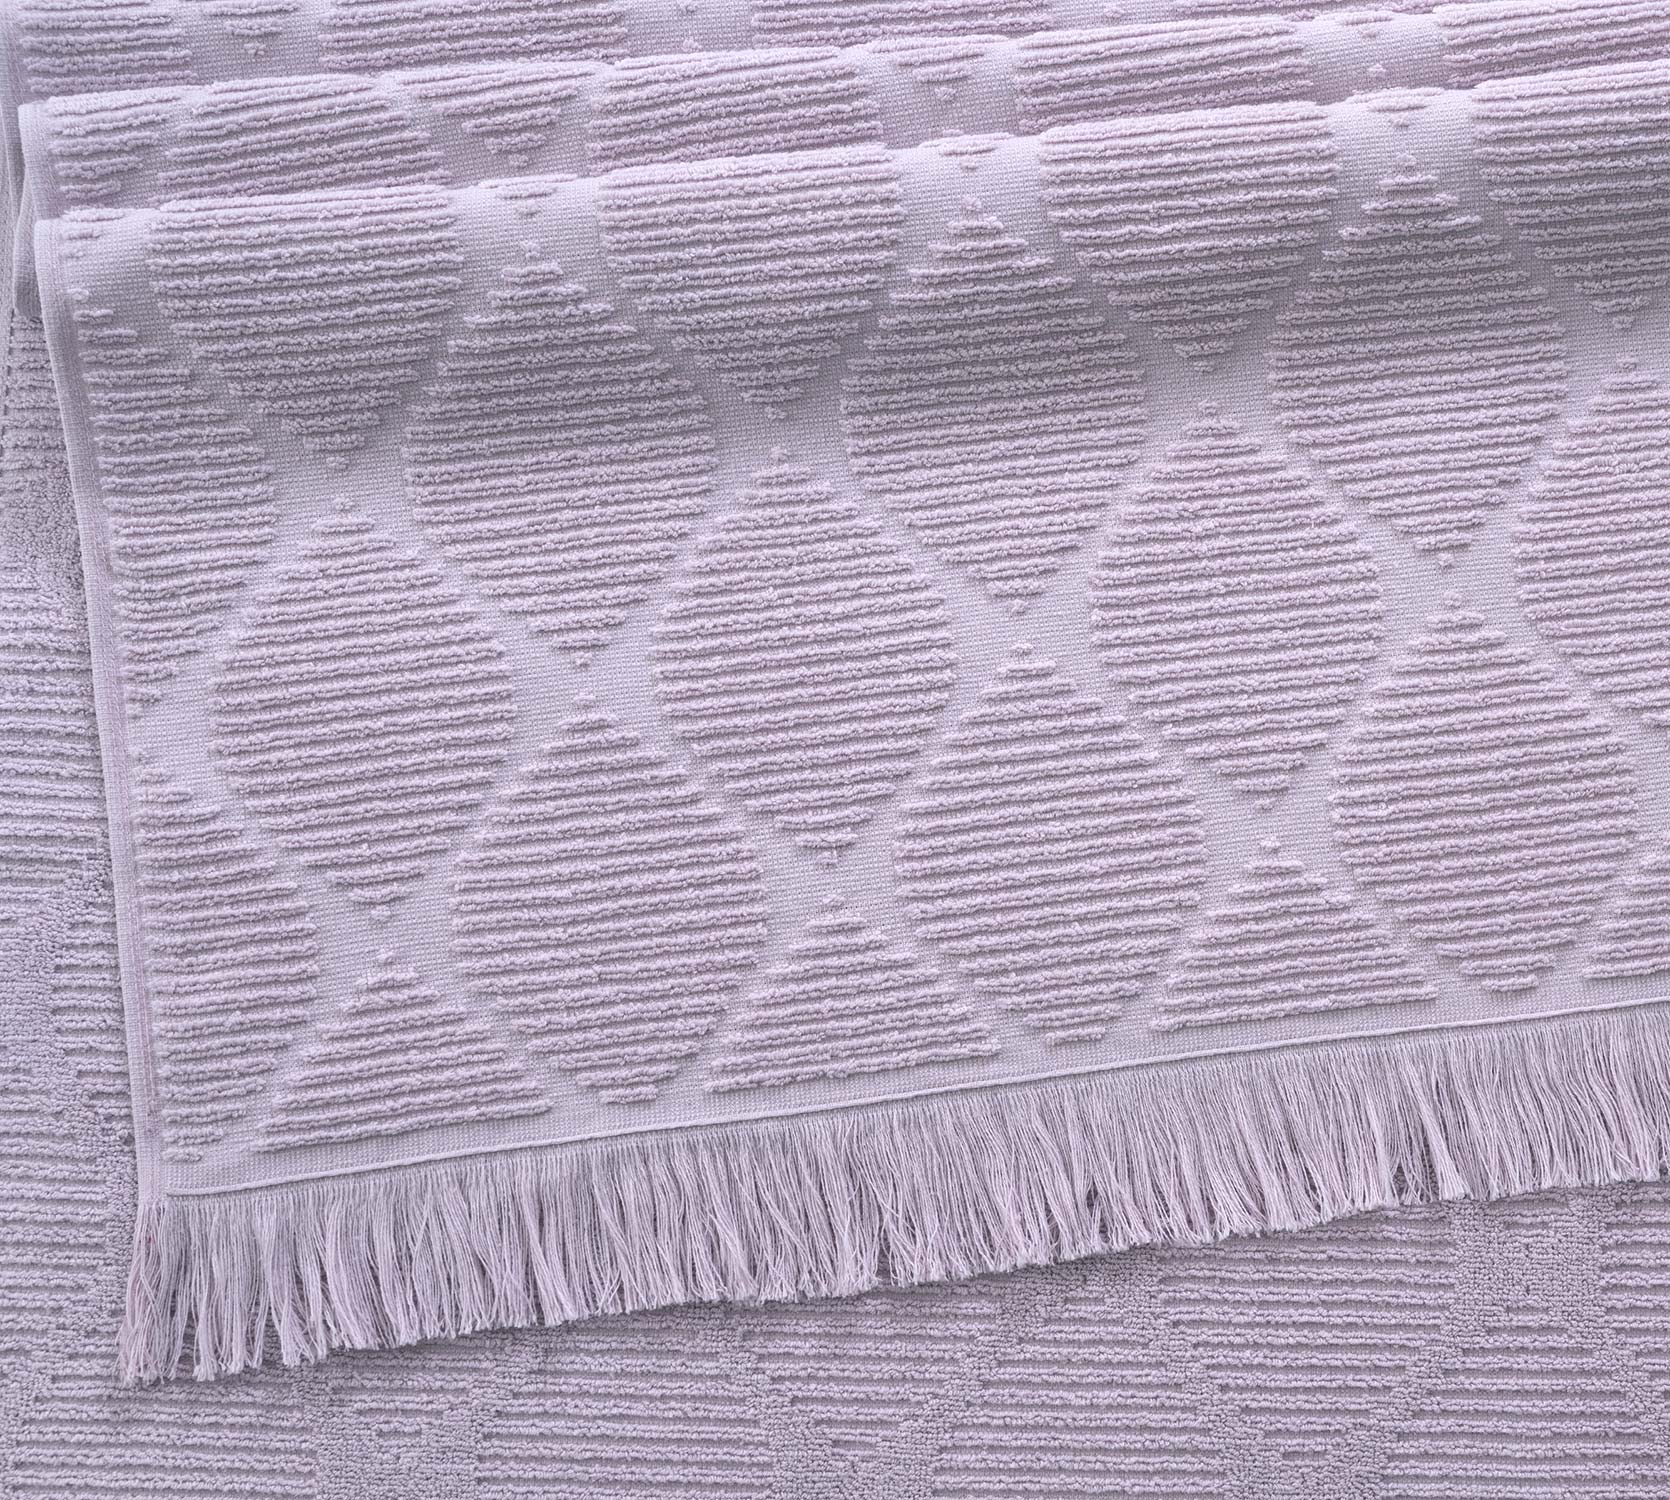 Постельное белье Полотенце махровое банное 70х140, Родос розовый крем фото